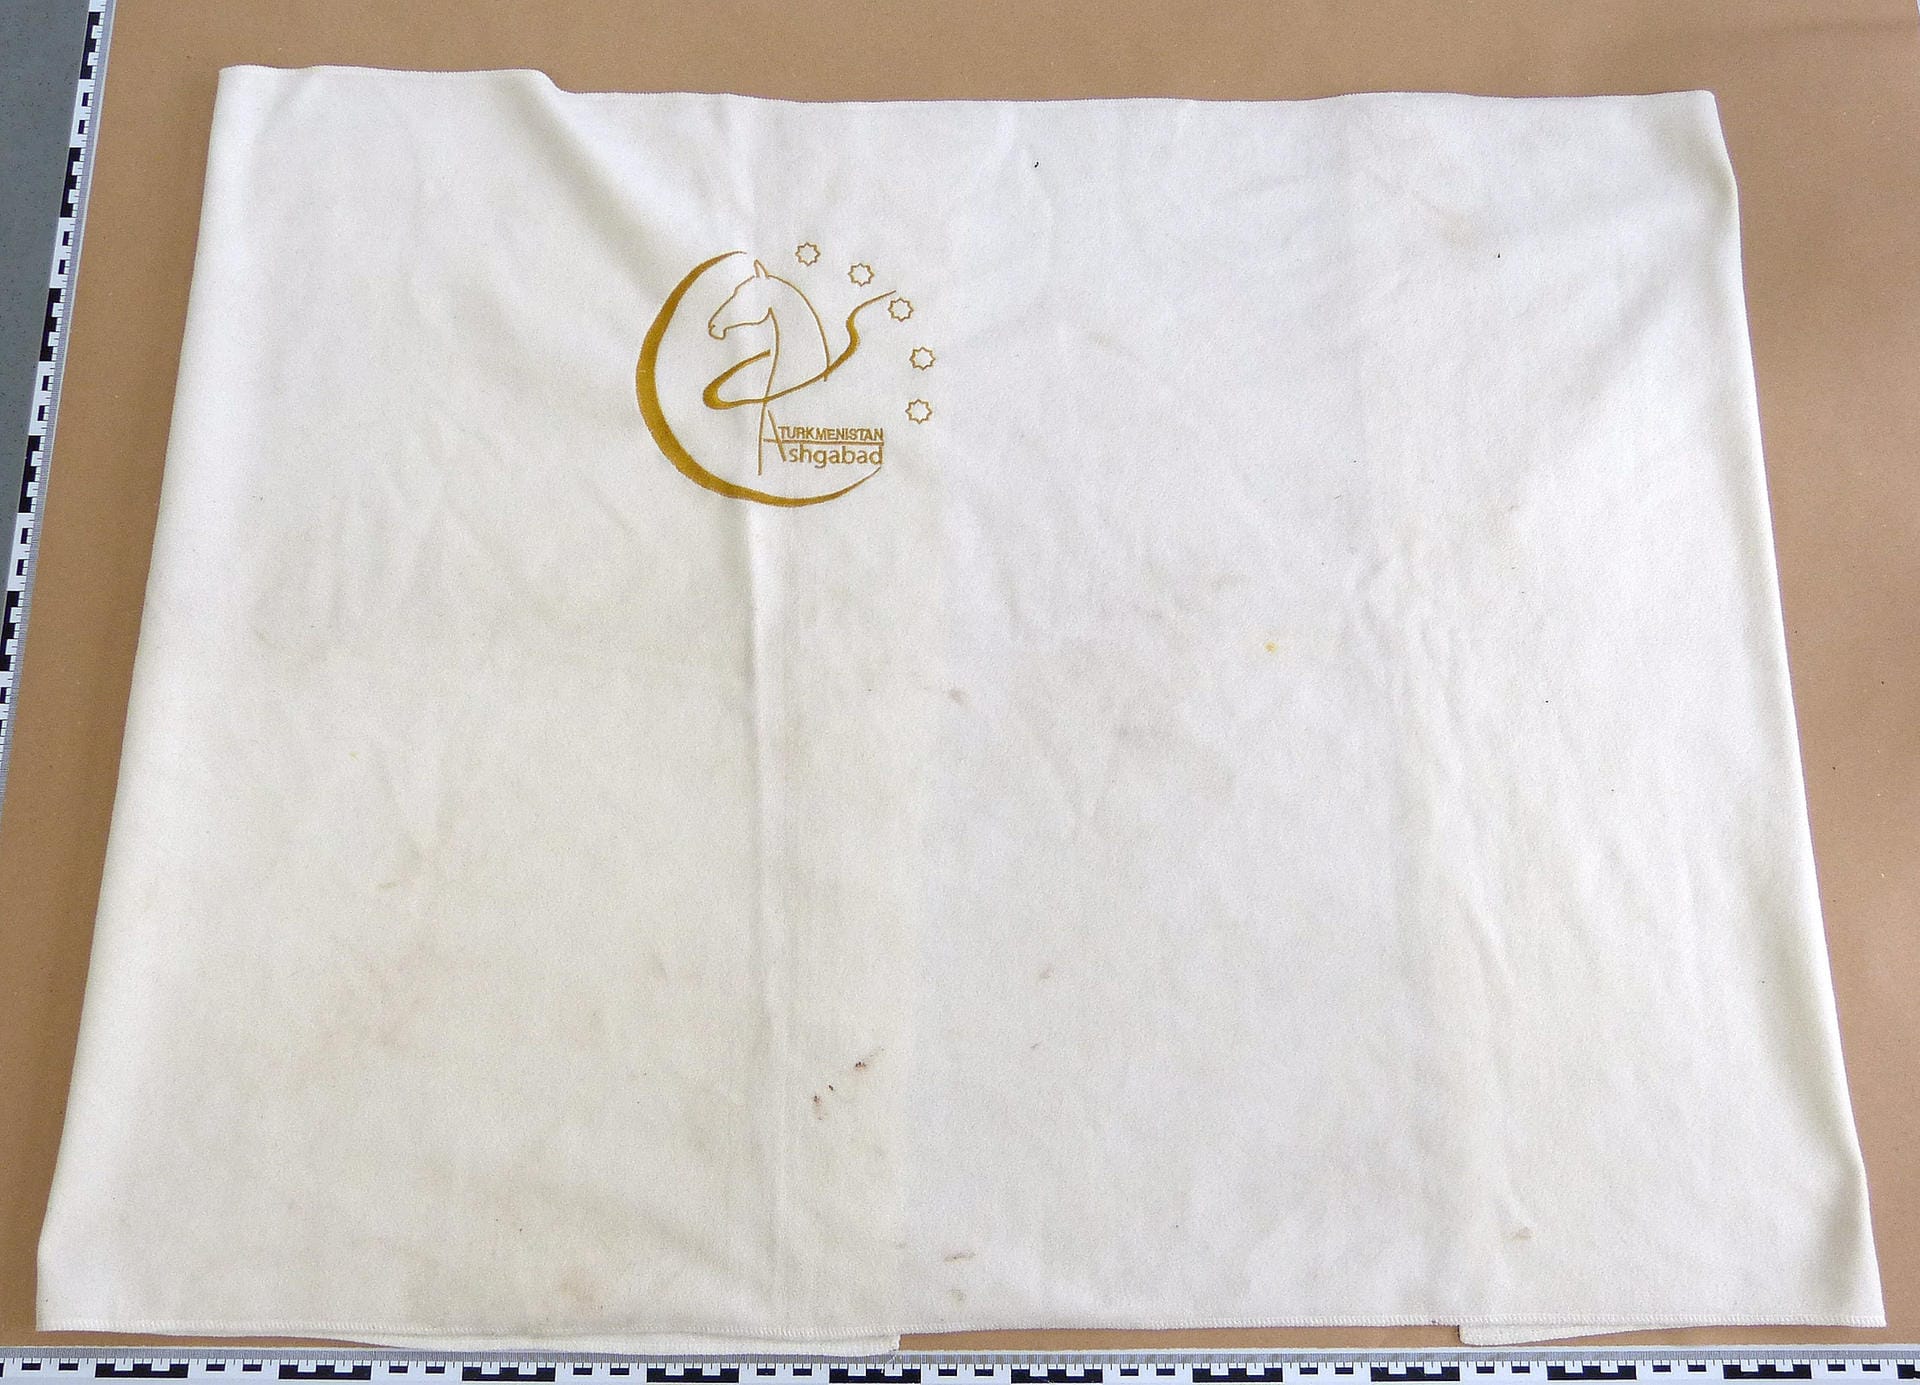 Die Decke des Säuglings: In dieses Tuch mit der Aufschrift "Turkmenistan Ashgabad" war das Baby laut Polizei eingewickelt.